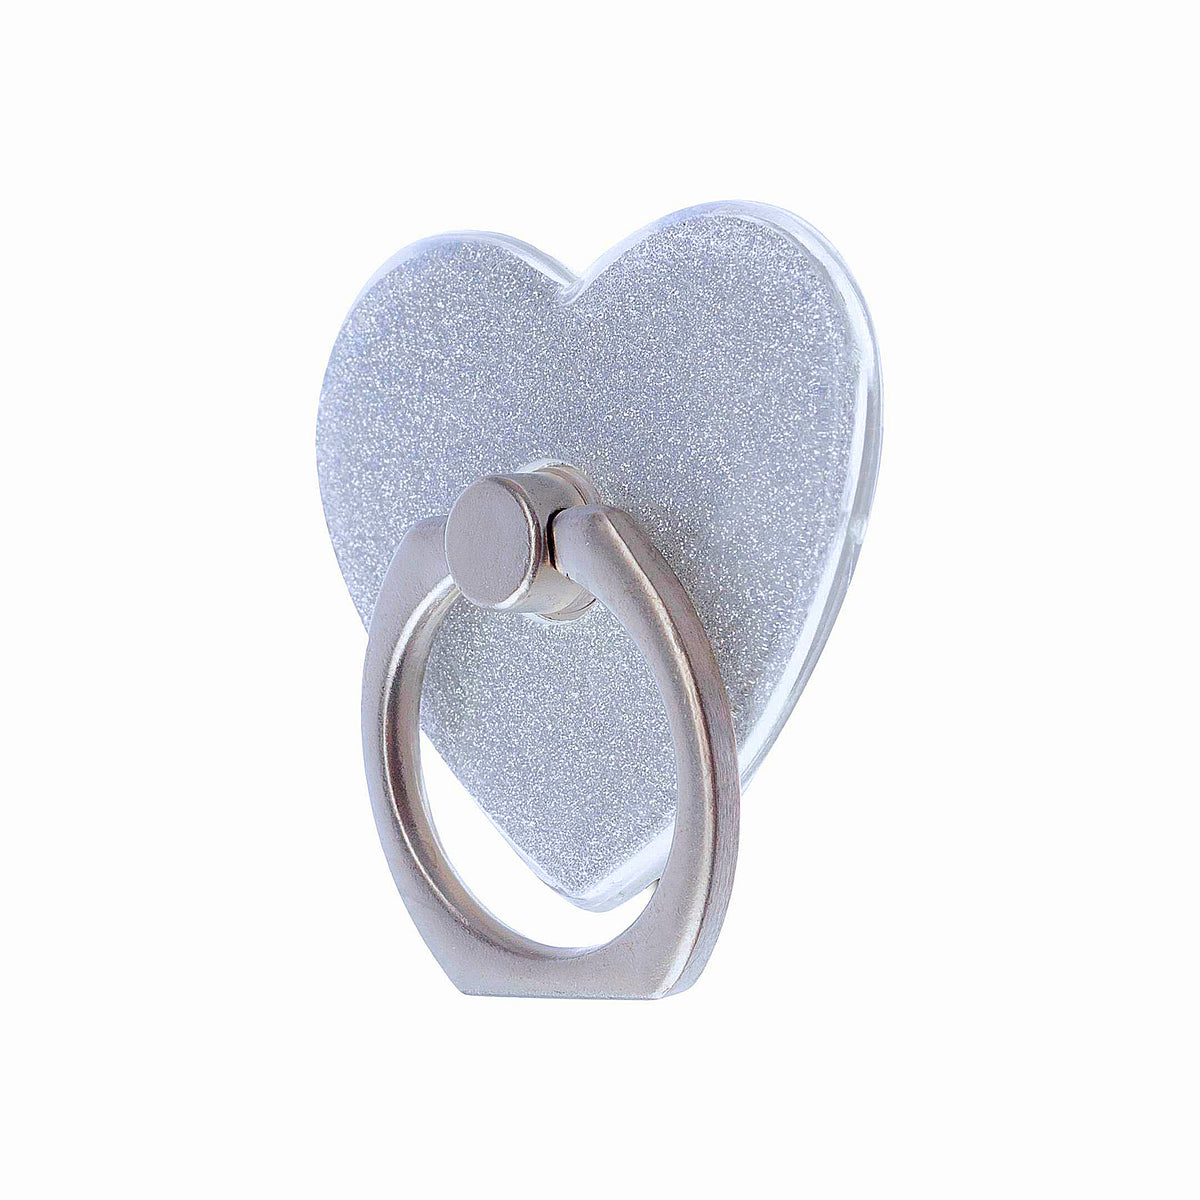 Sparkle Heart Phone Ring - White Glitter